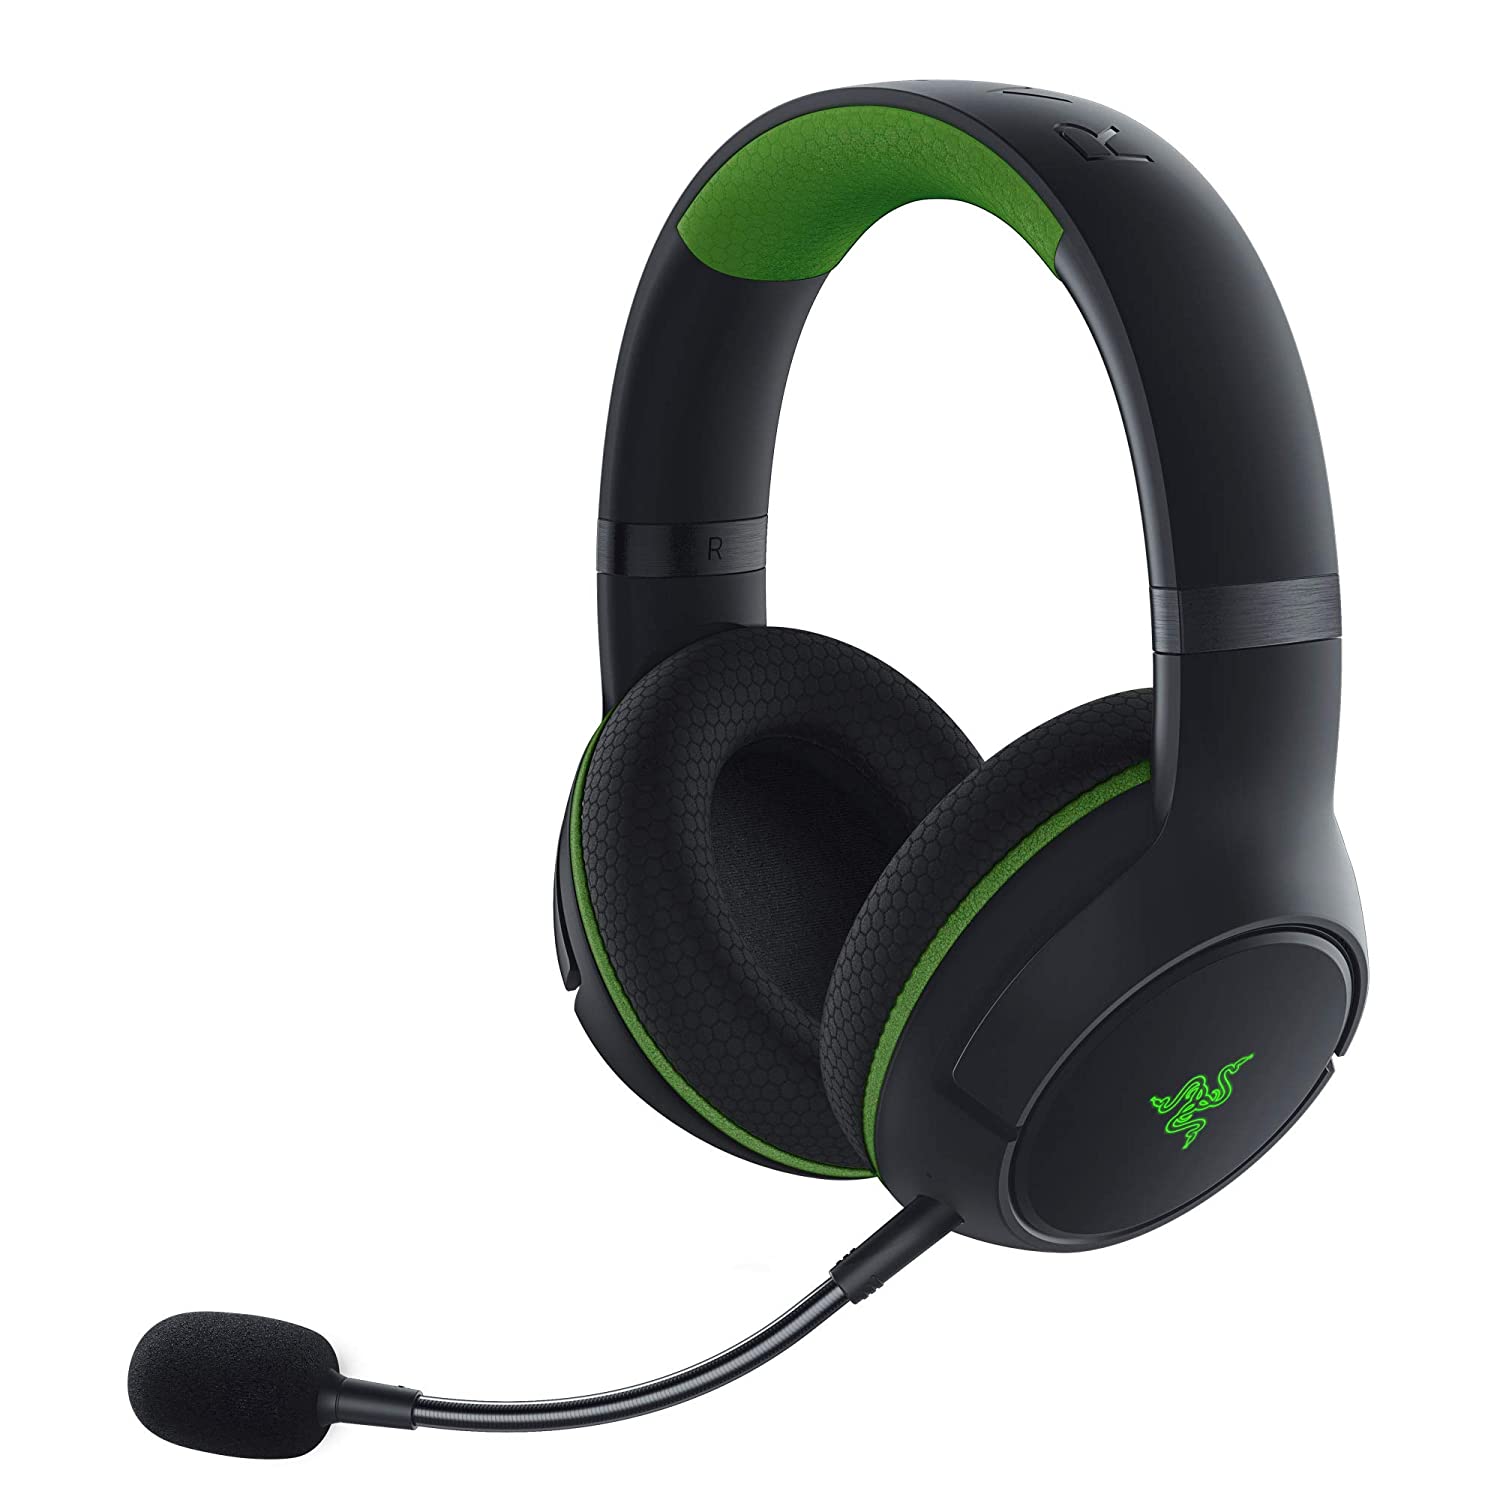 Razer Kaira Pro Wireless Gaming Headset for Xbox $90 + Free Shipping